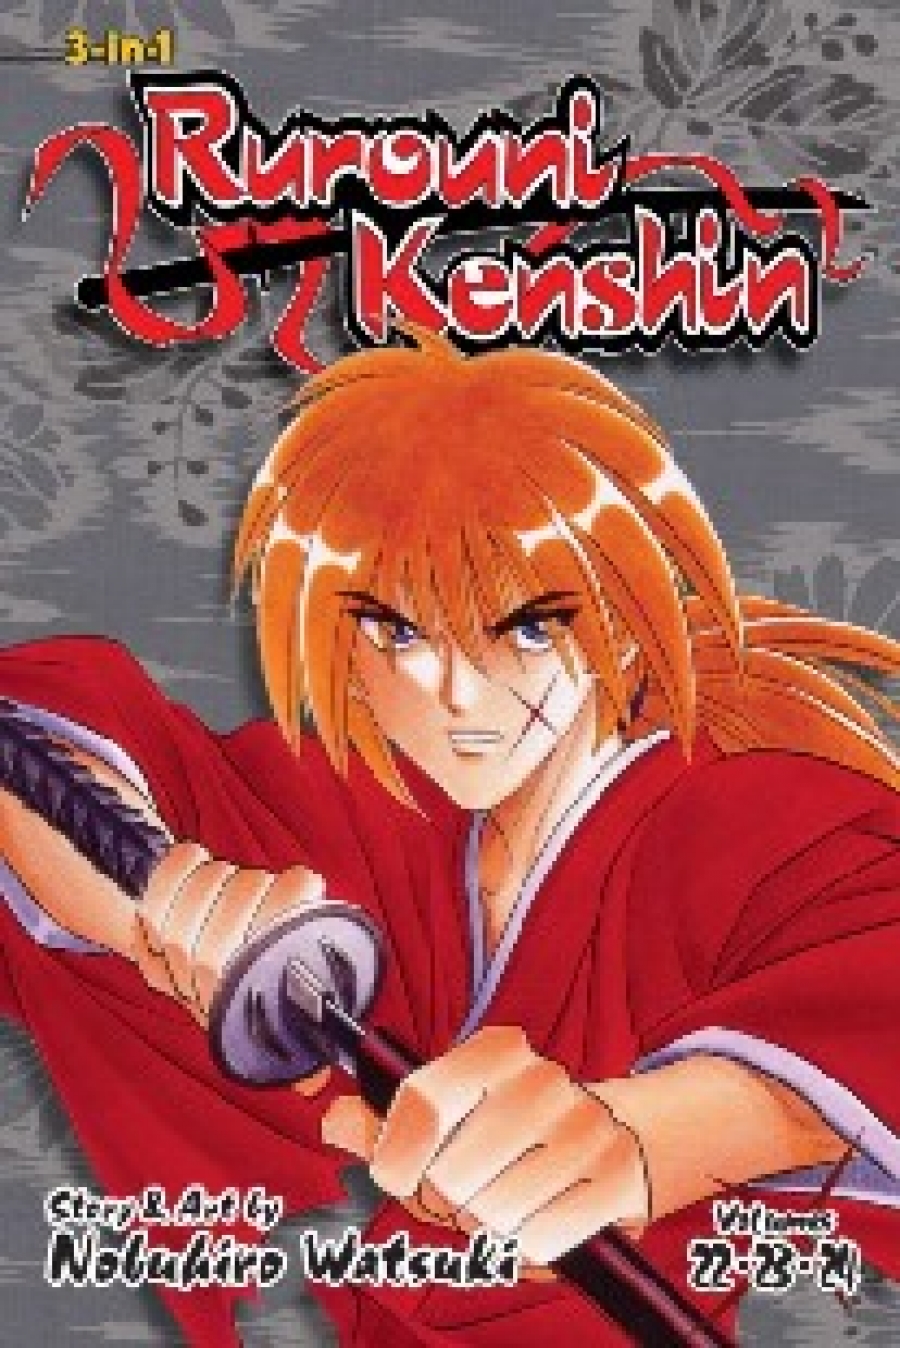 Watsuki Nobuhiro Rurouni Kenshin (3-In-1 Edition), Vol. 8: Includes Vols. 22, 23 & 24 